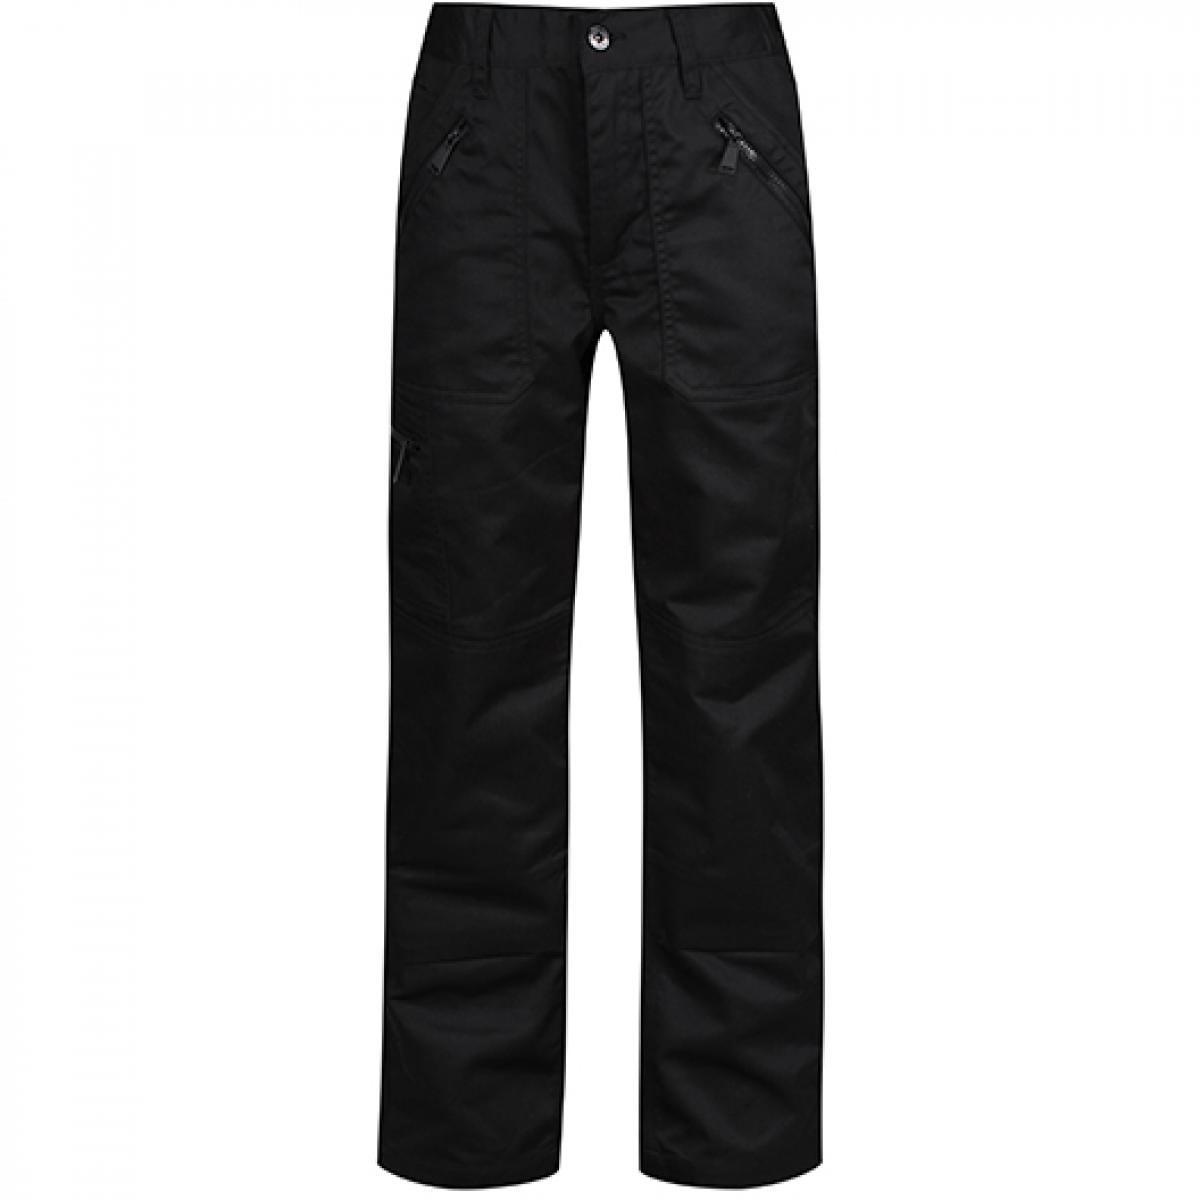 Hersteller: Regatta Professional Herstellernummer: TRJ601 Artikelbezeichnung: Women's Pro Action Trousers - Damenhose Farbe: Black